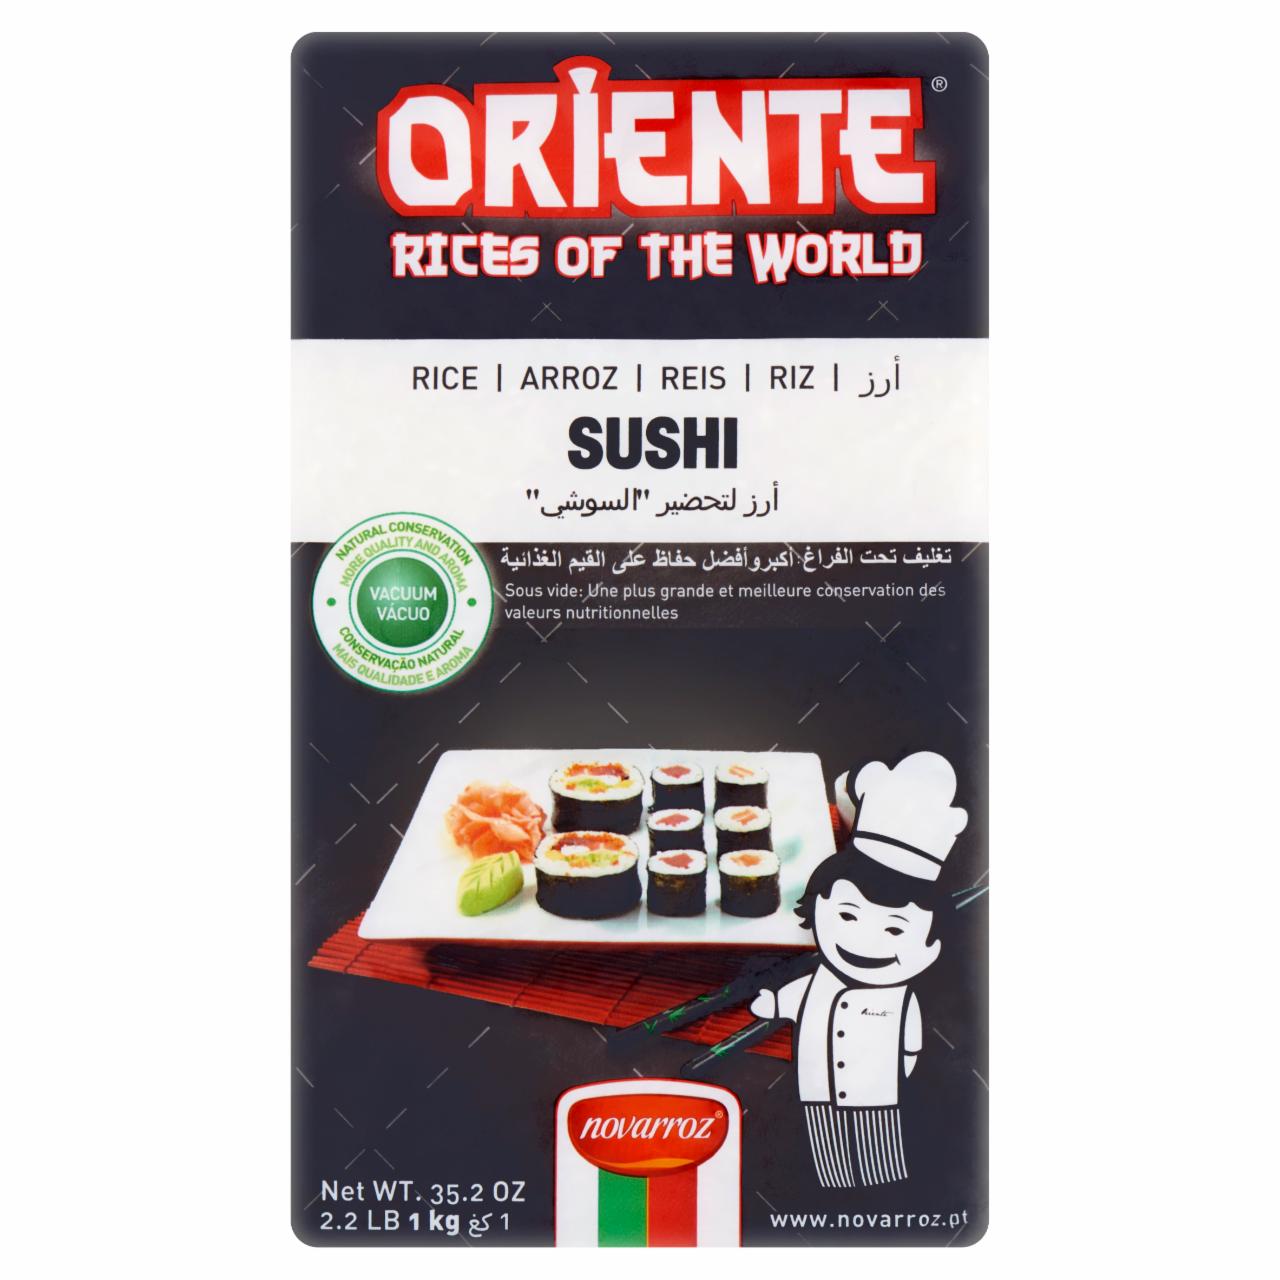 Képek - Oriente sushi rizs 1 kg